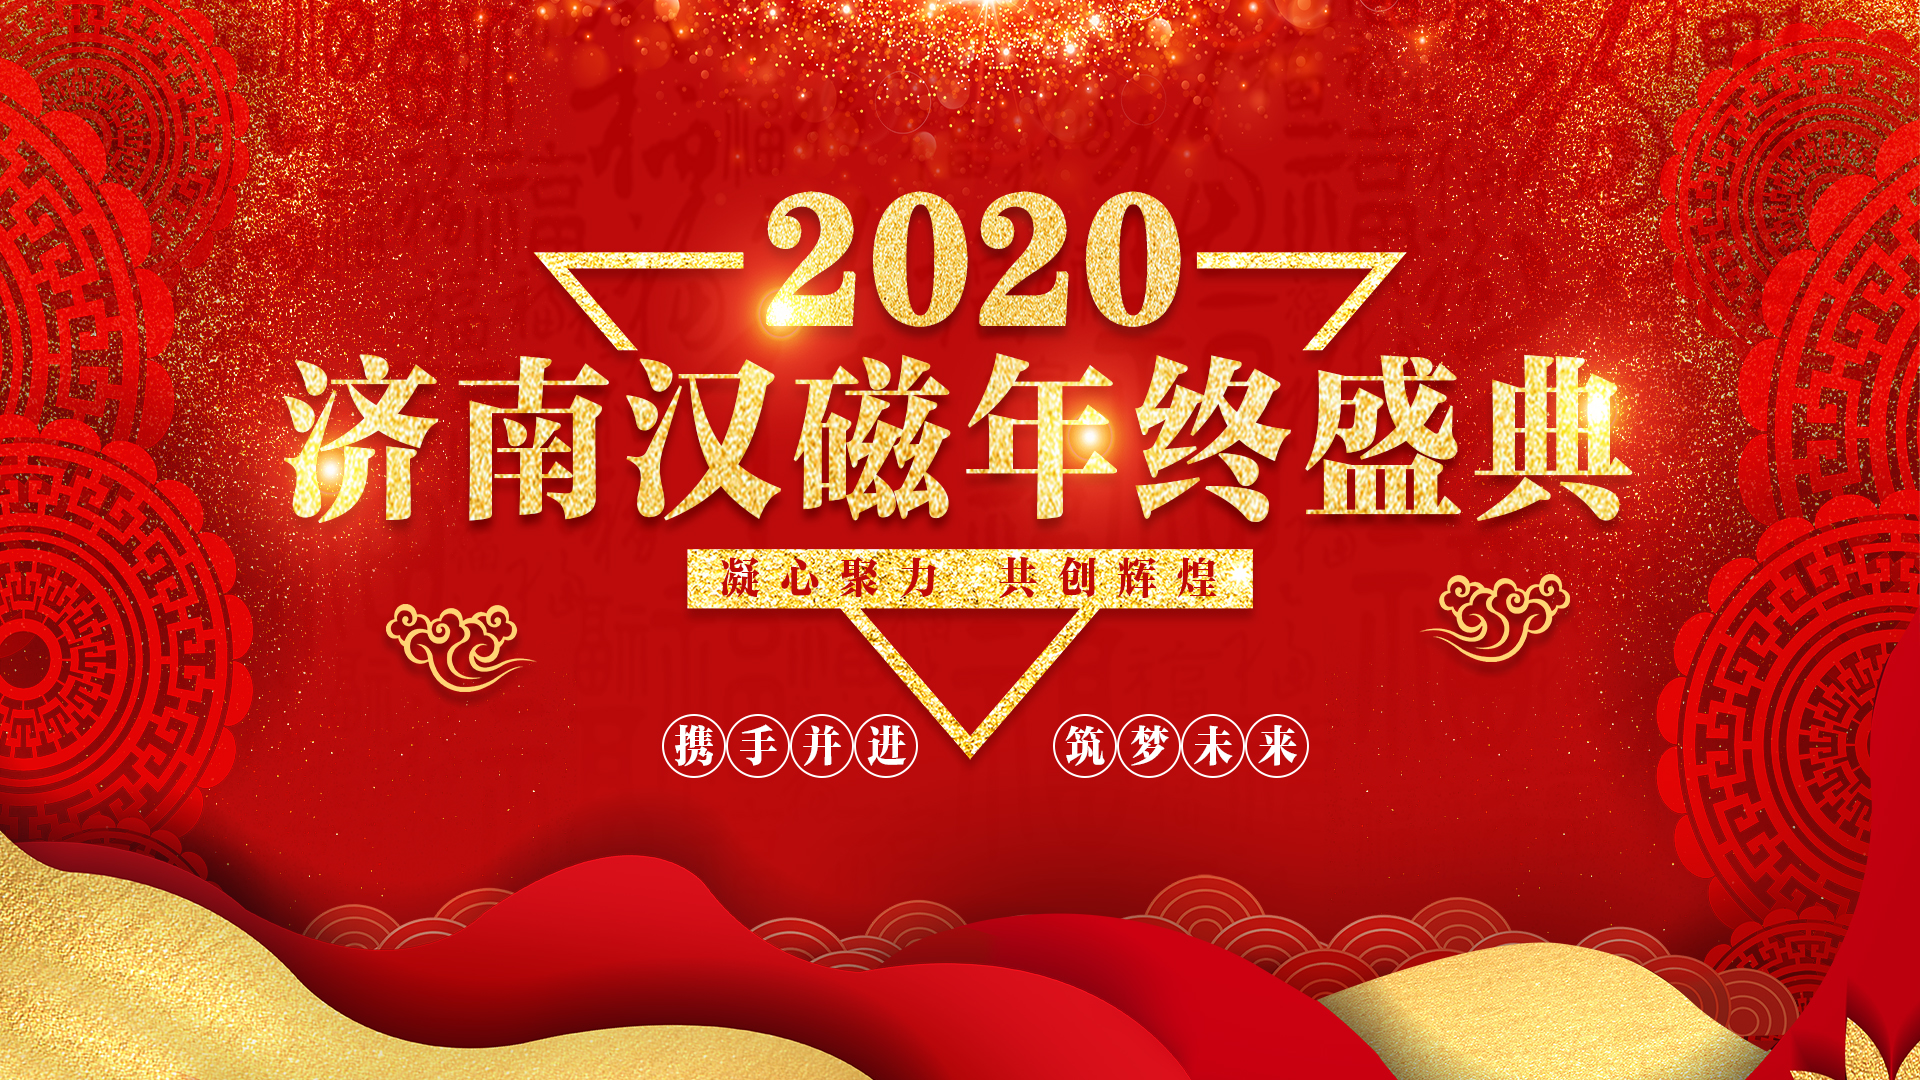 济南汉磁2020年终盛典